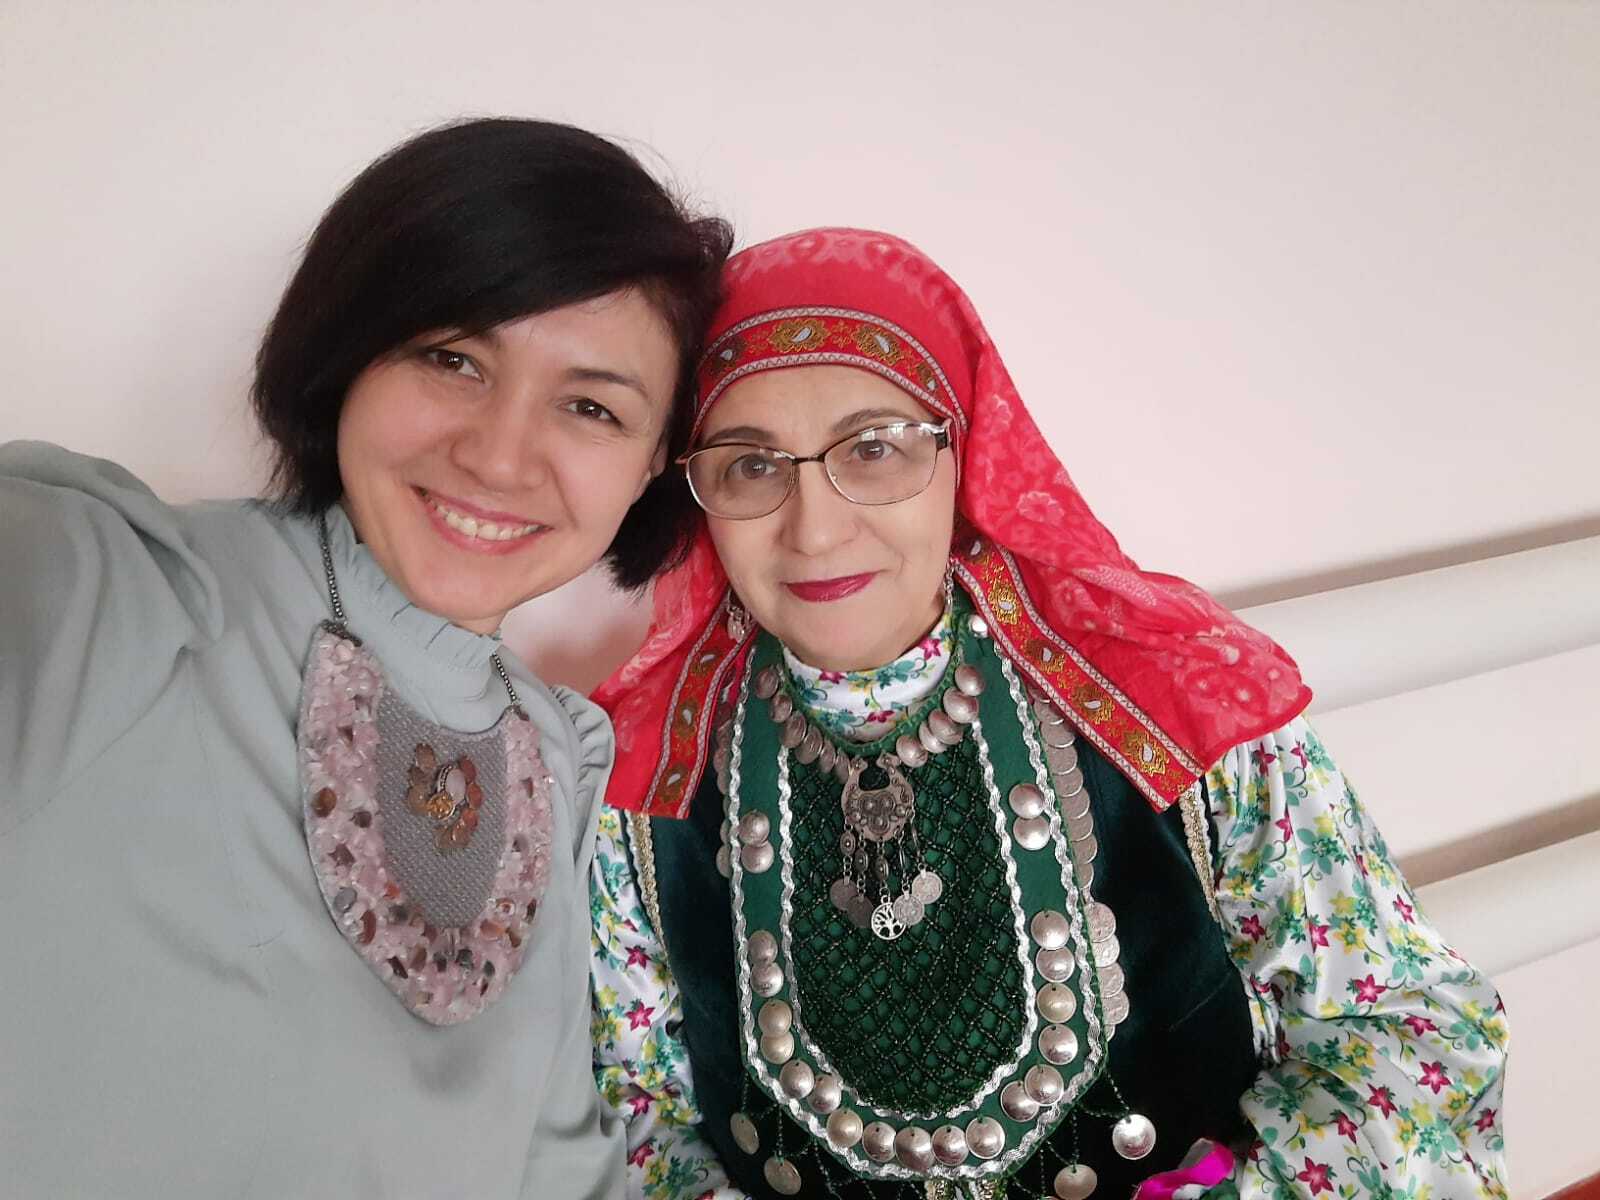 В селе Кара-Якупово Чишминского района состоялся йыйын общества башкирских женщин «Агиней»